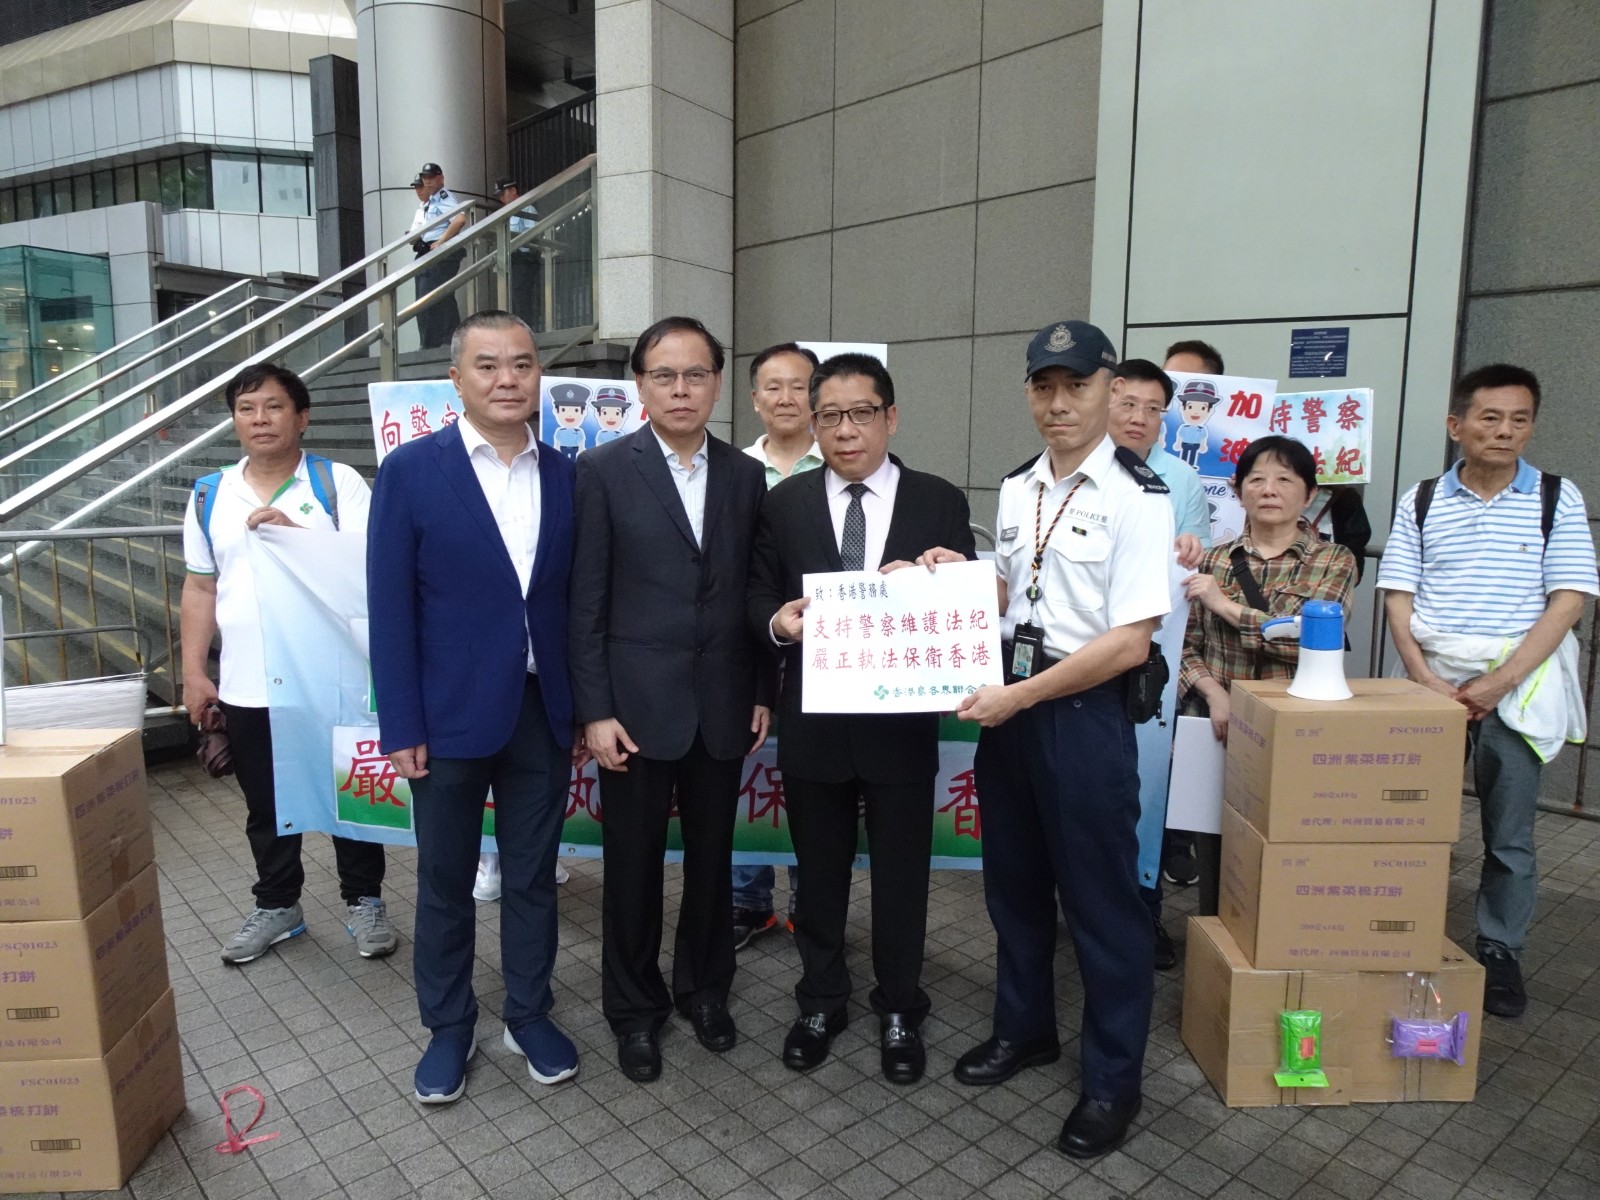 支持警察維護法紀 嚴正執法保衛香港-2